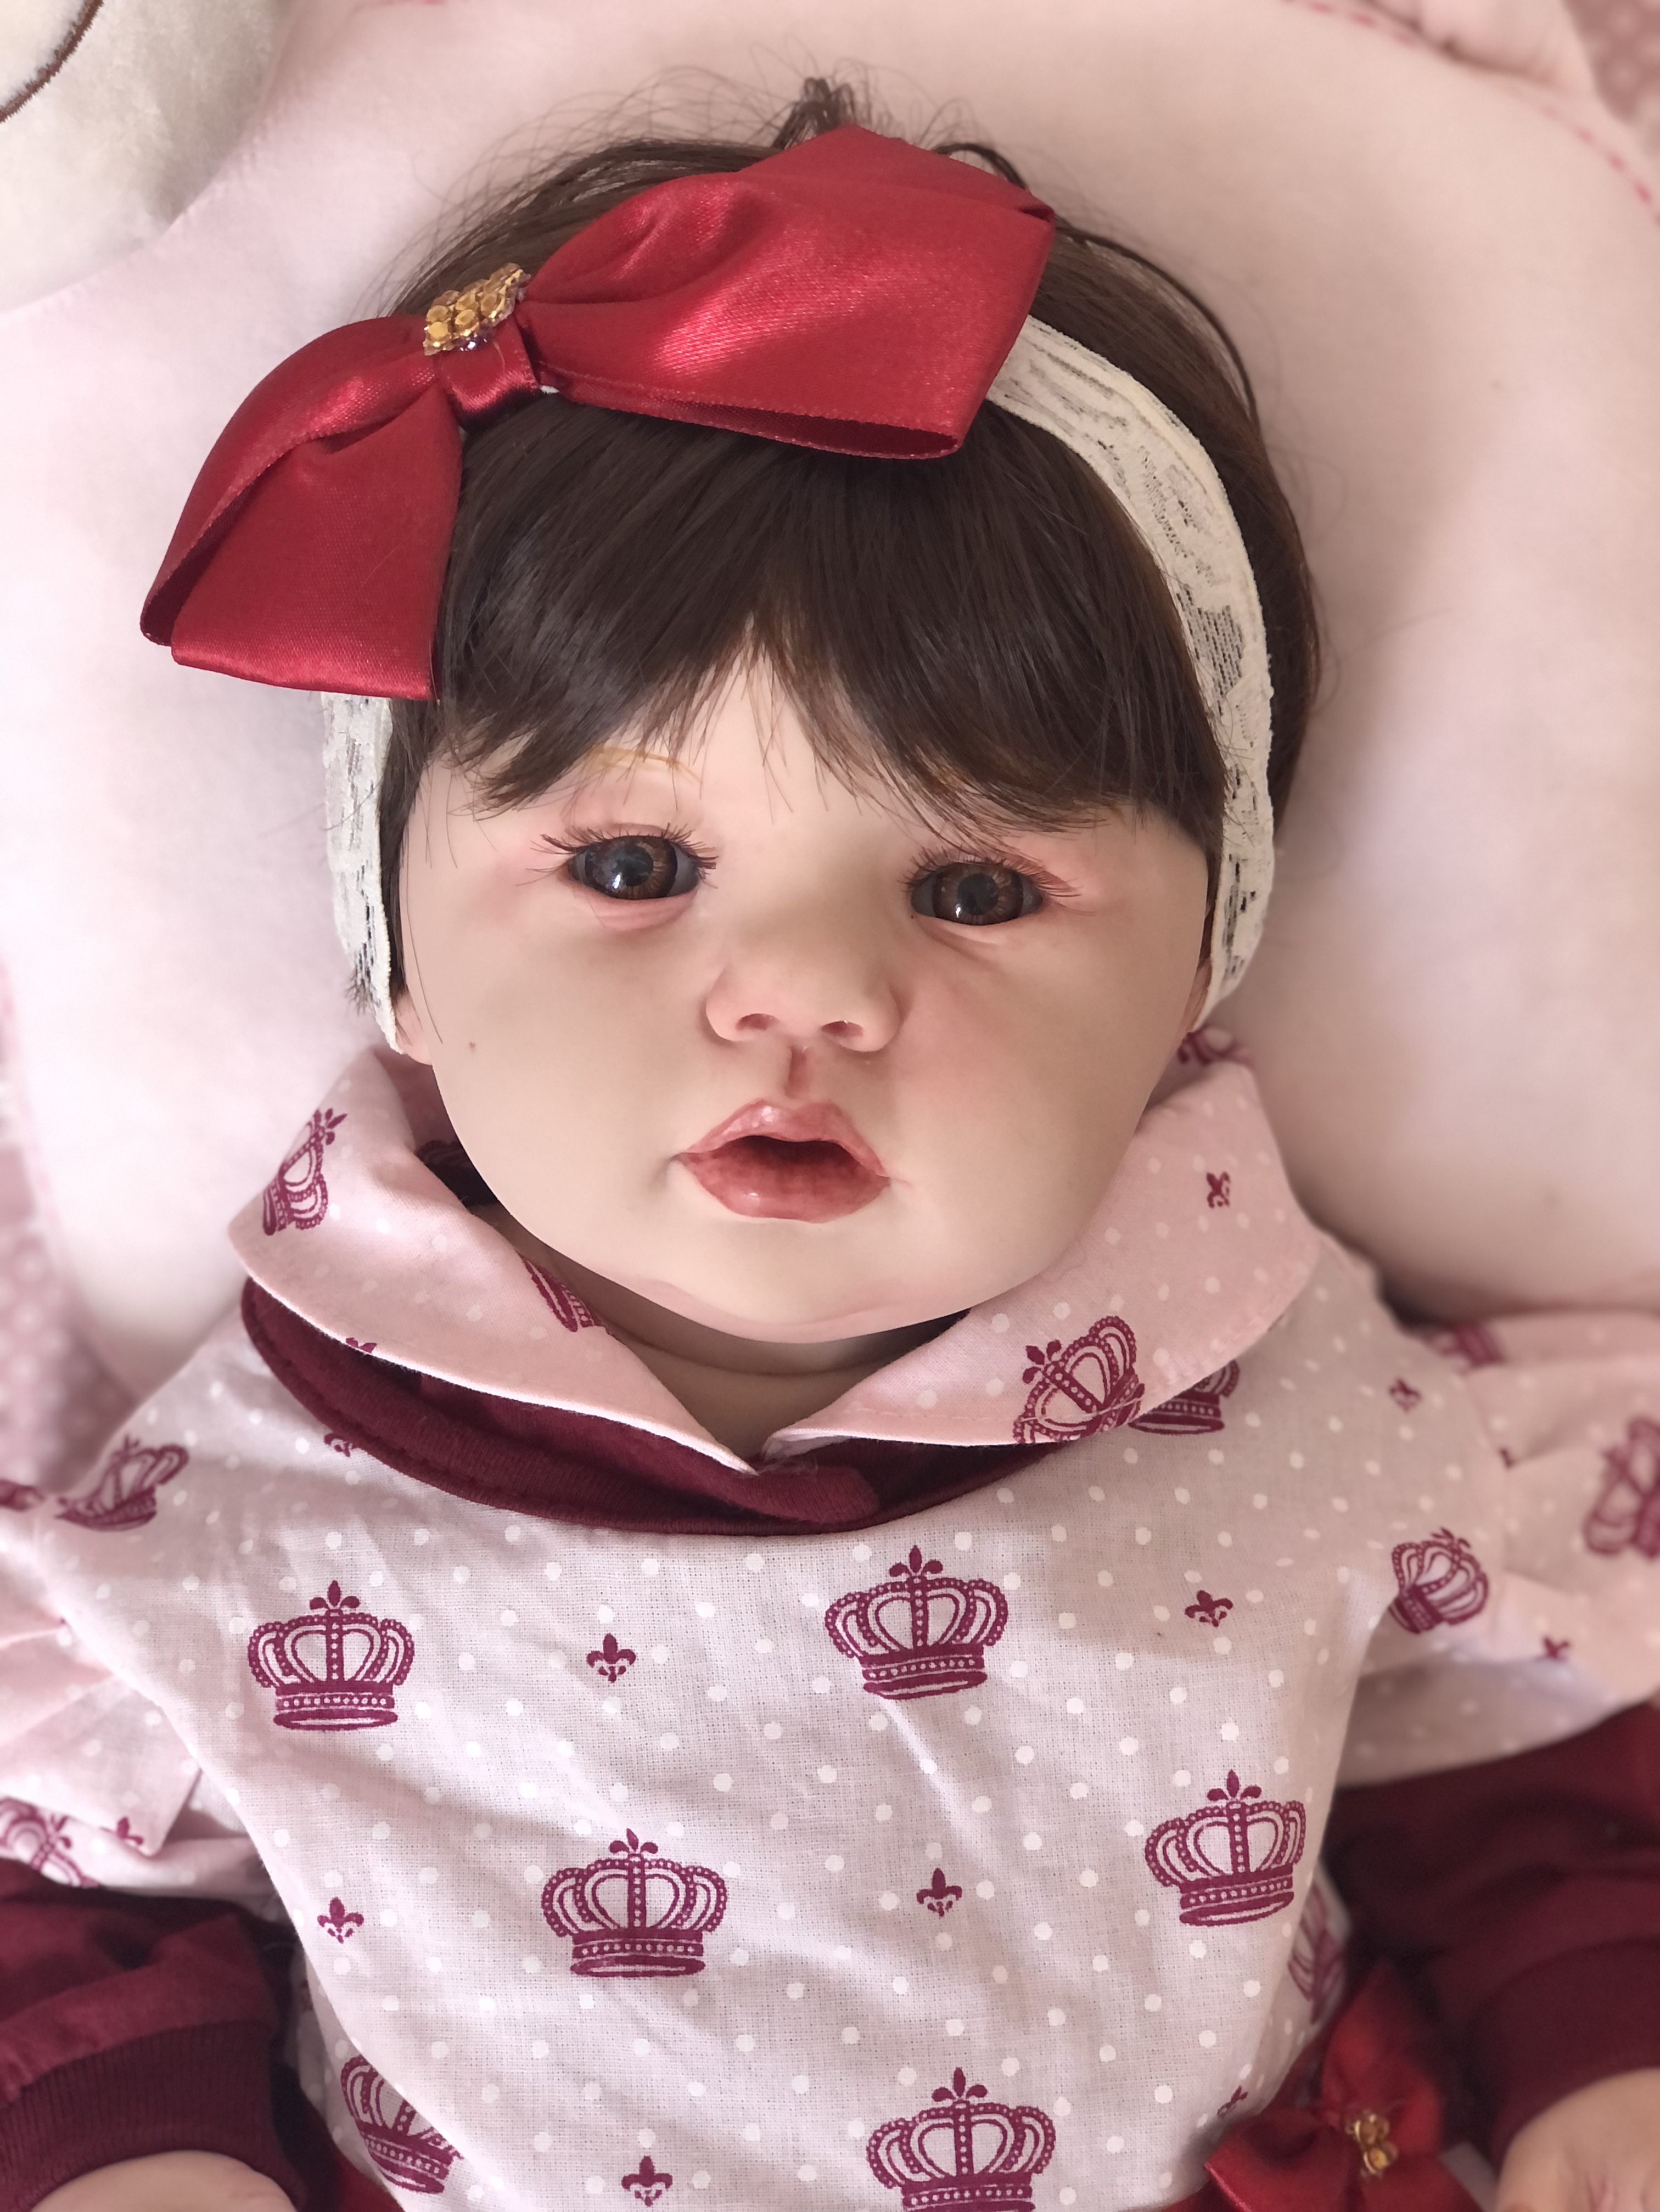 Boneca Bebê Reborn Realista Corpo Silicone Original Barata